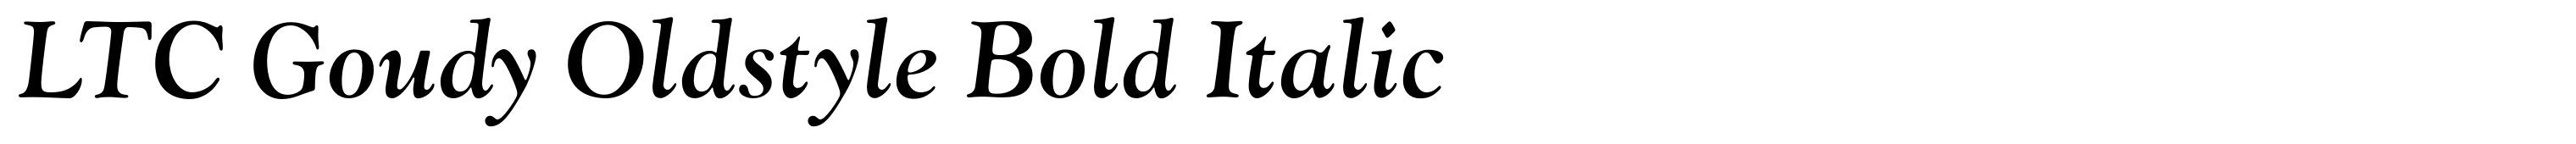 LTC Goudy Oldstyle Bold Italic